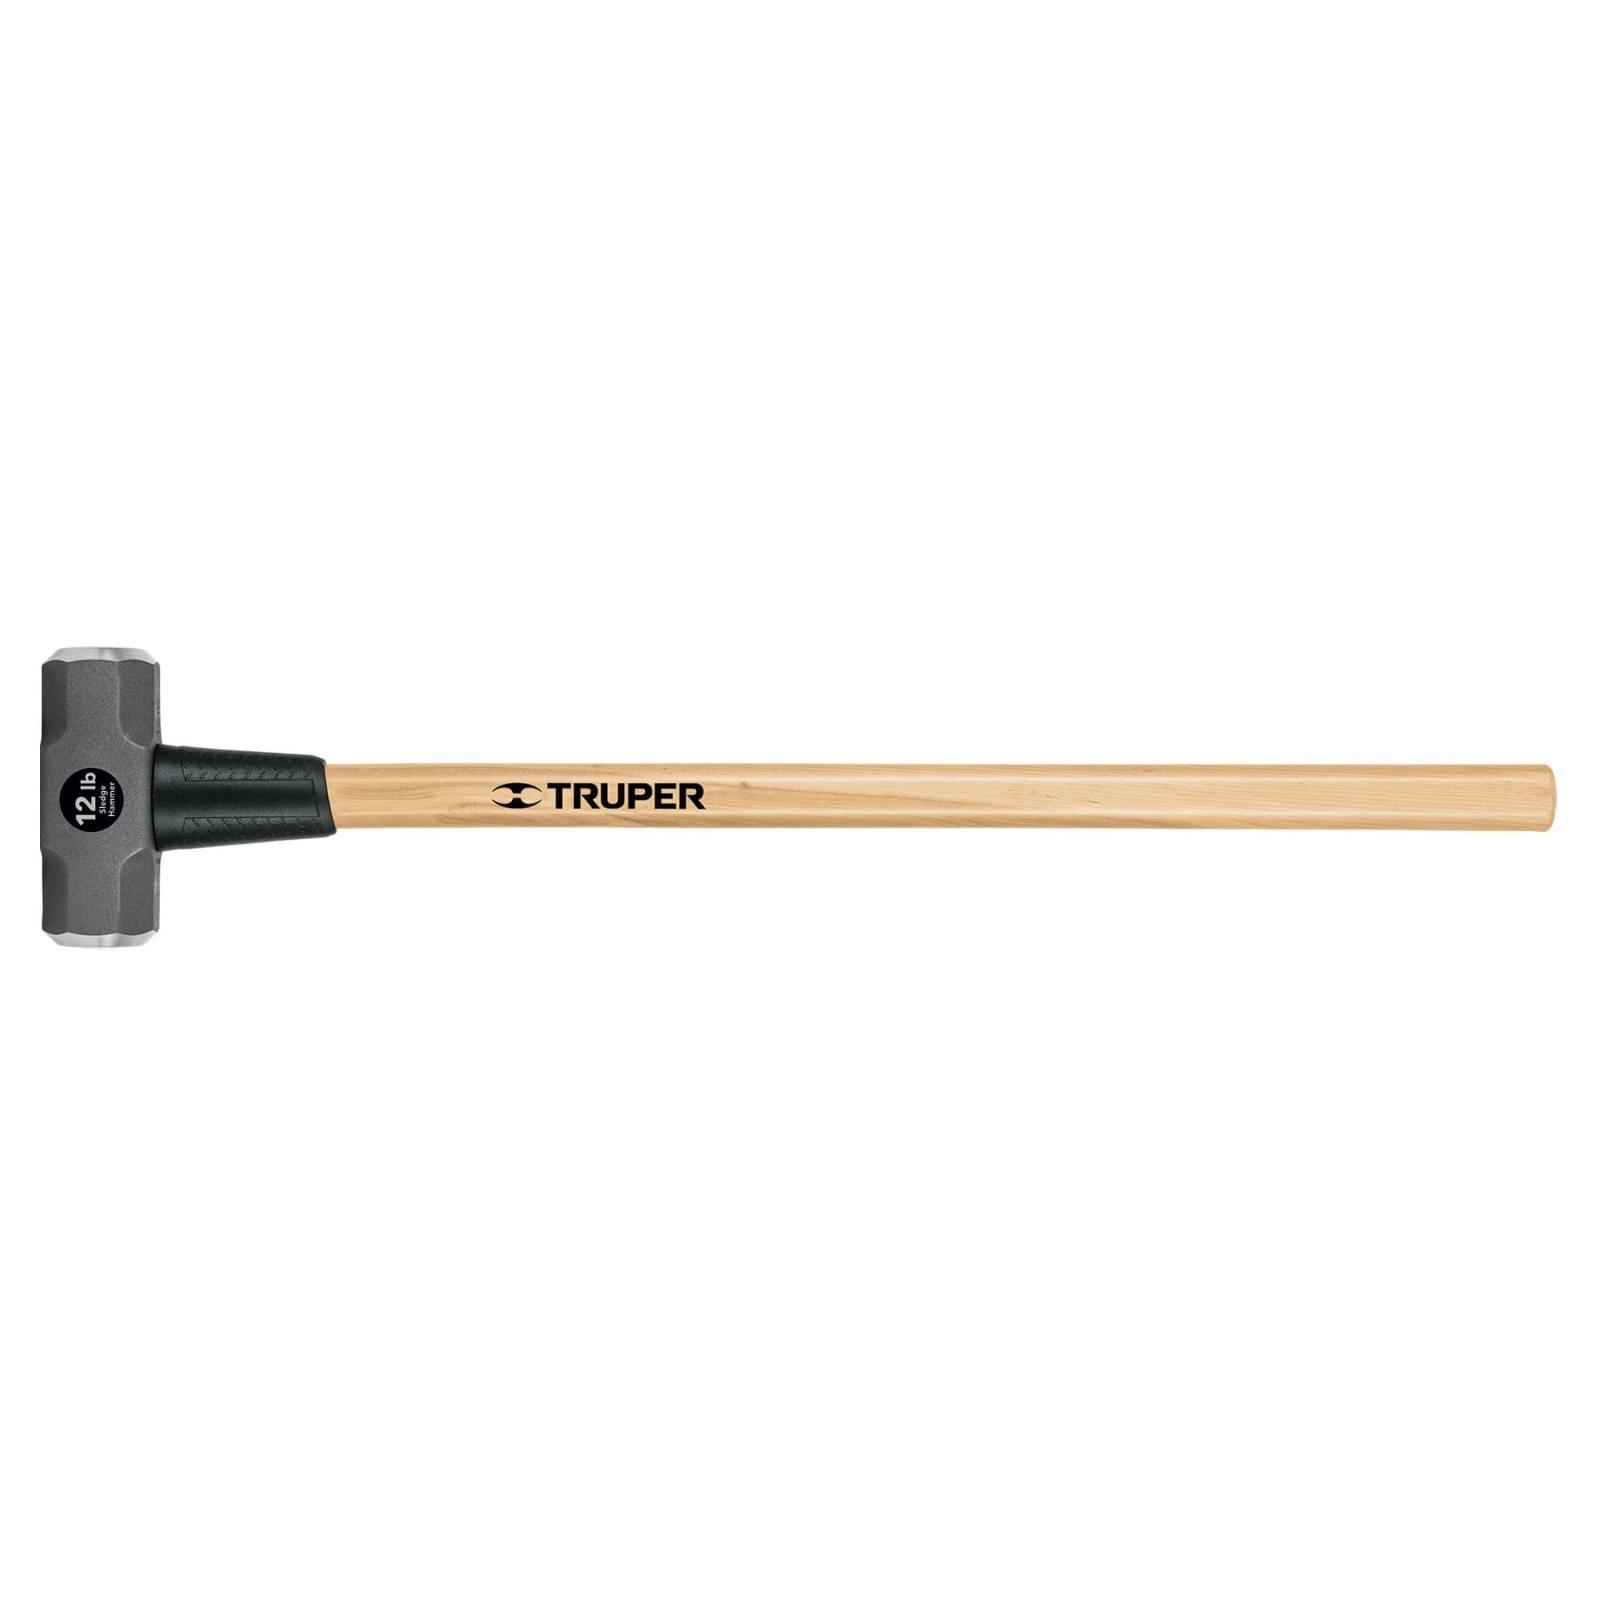 Truper 12lb Sledge Hammer